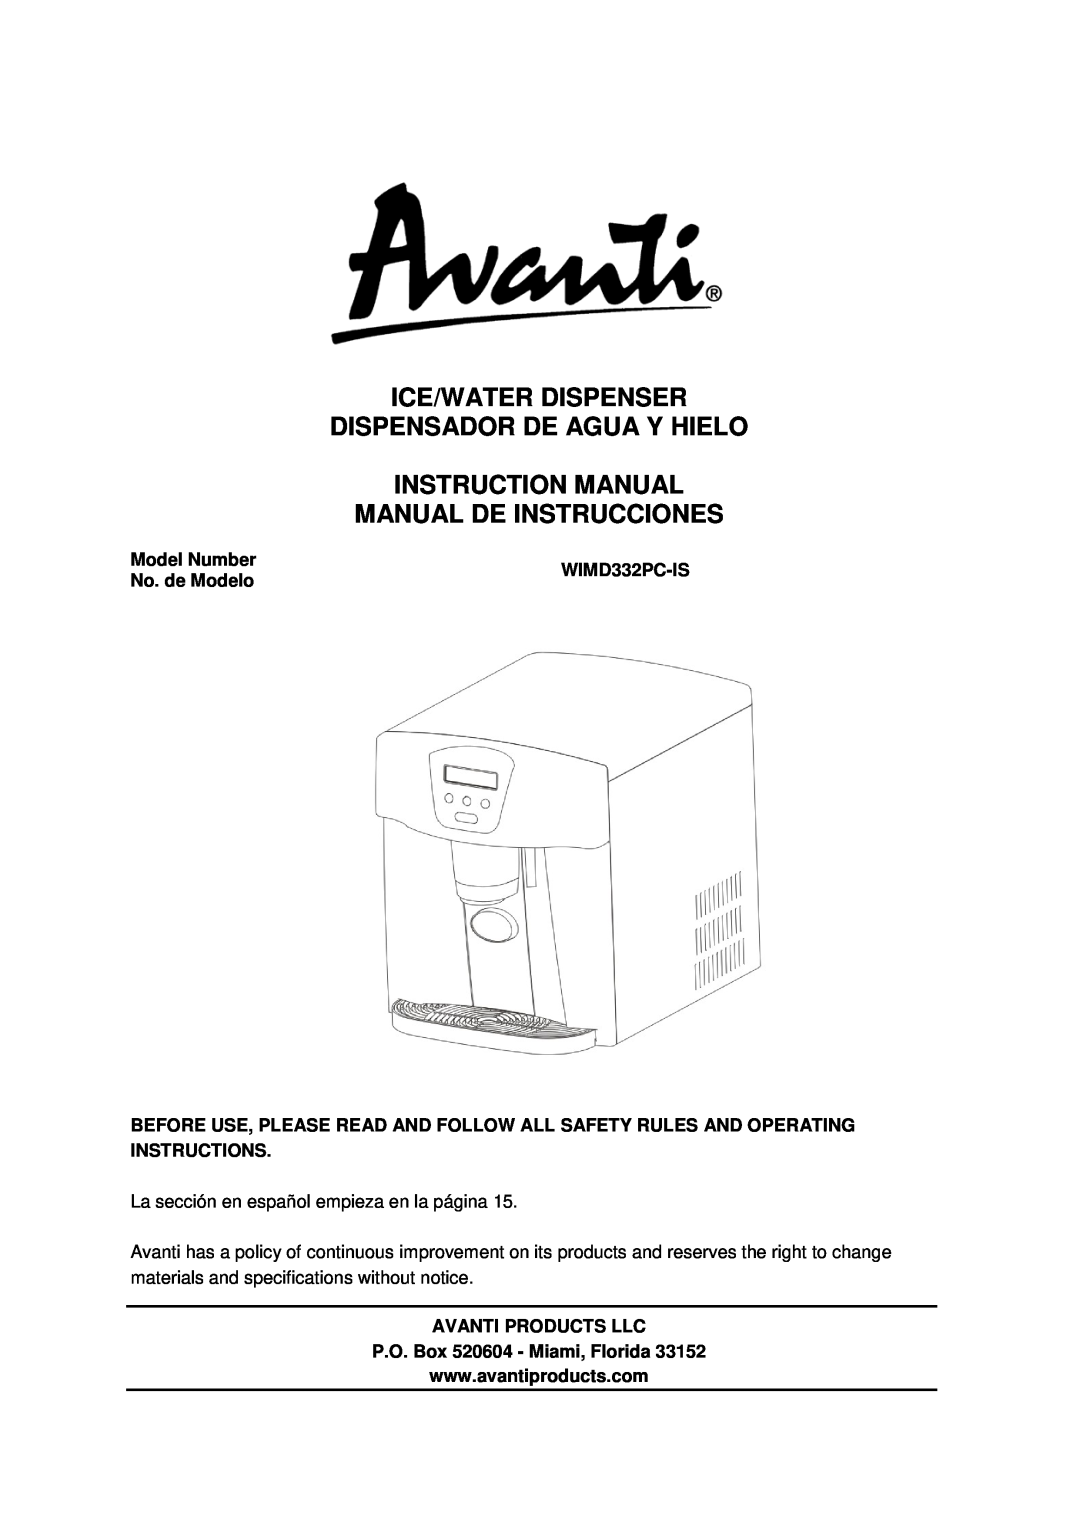 Avanti WIMD332PC-IS instruction manual Ice/Water Dispenser, Dispensador De Agua Y Hielo, Manual De Instrucciones 